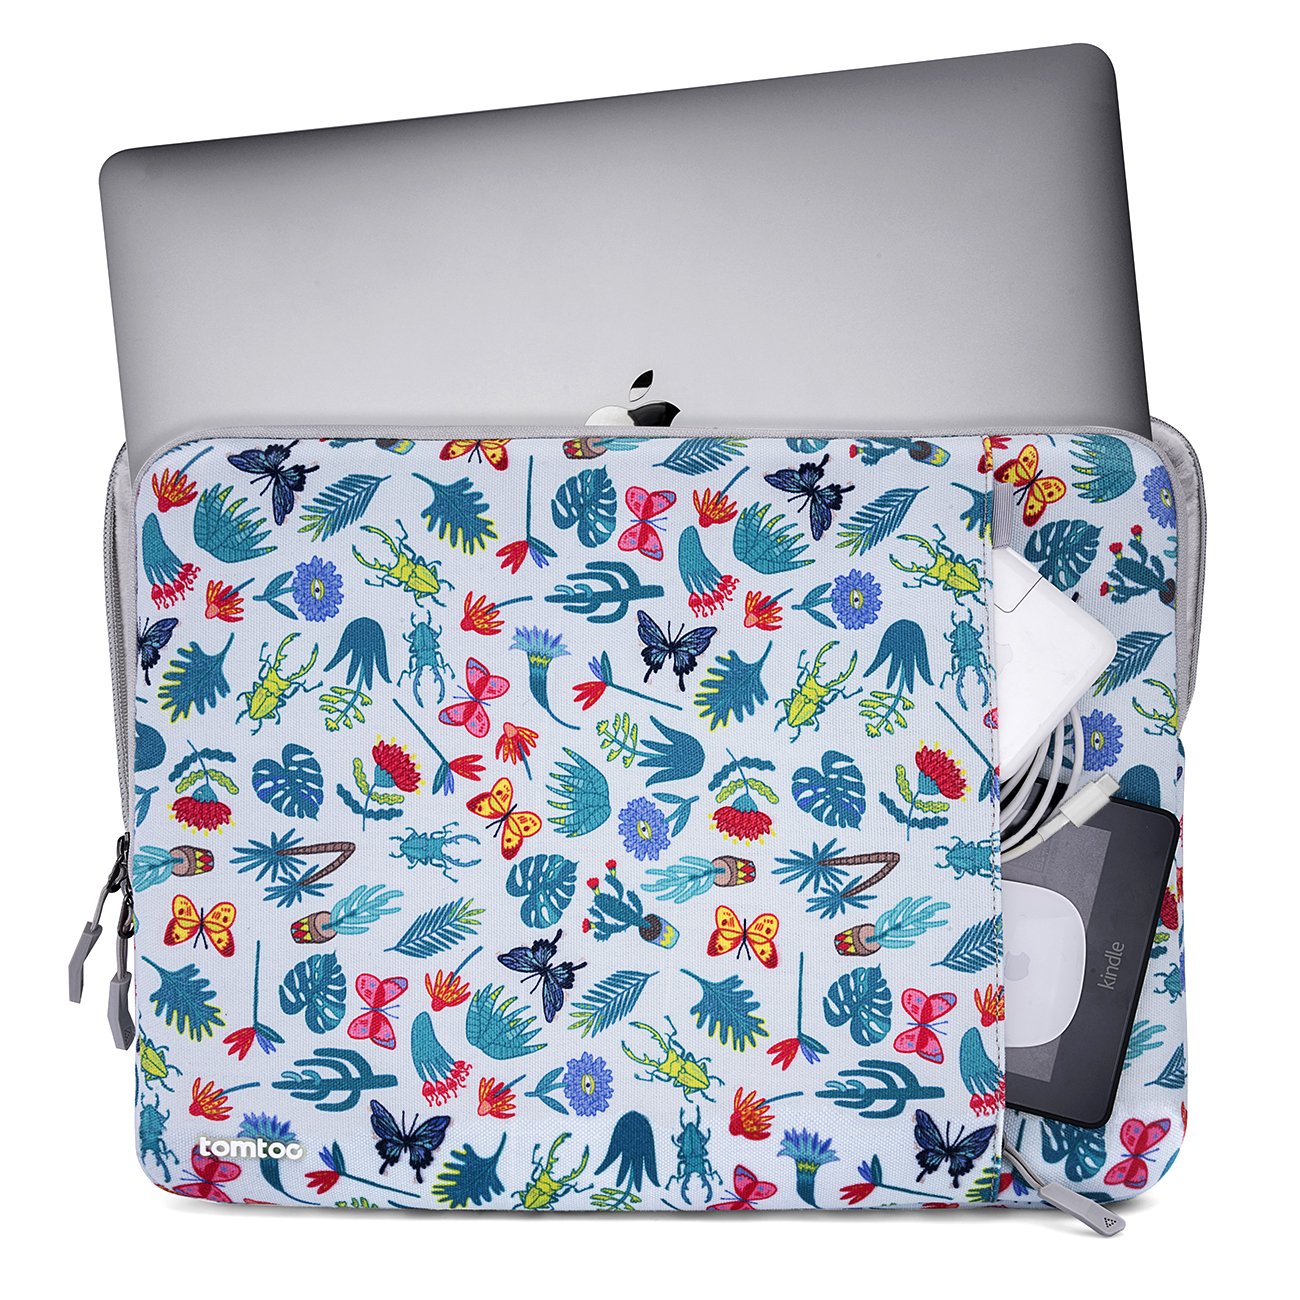 Chiếc túi thích hợp với các dòng máy Macbook hoặc laptop 13 inch